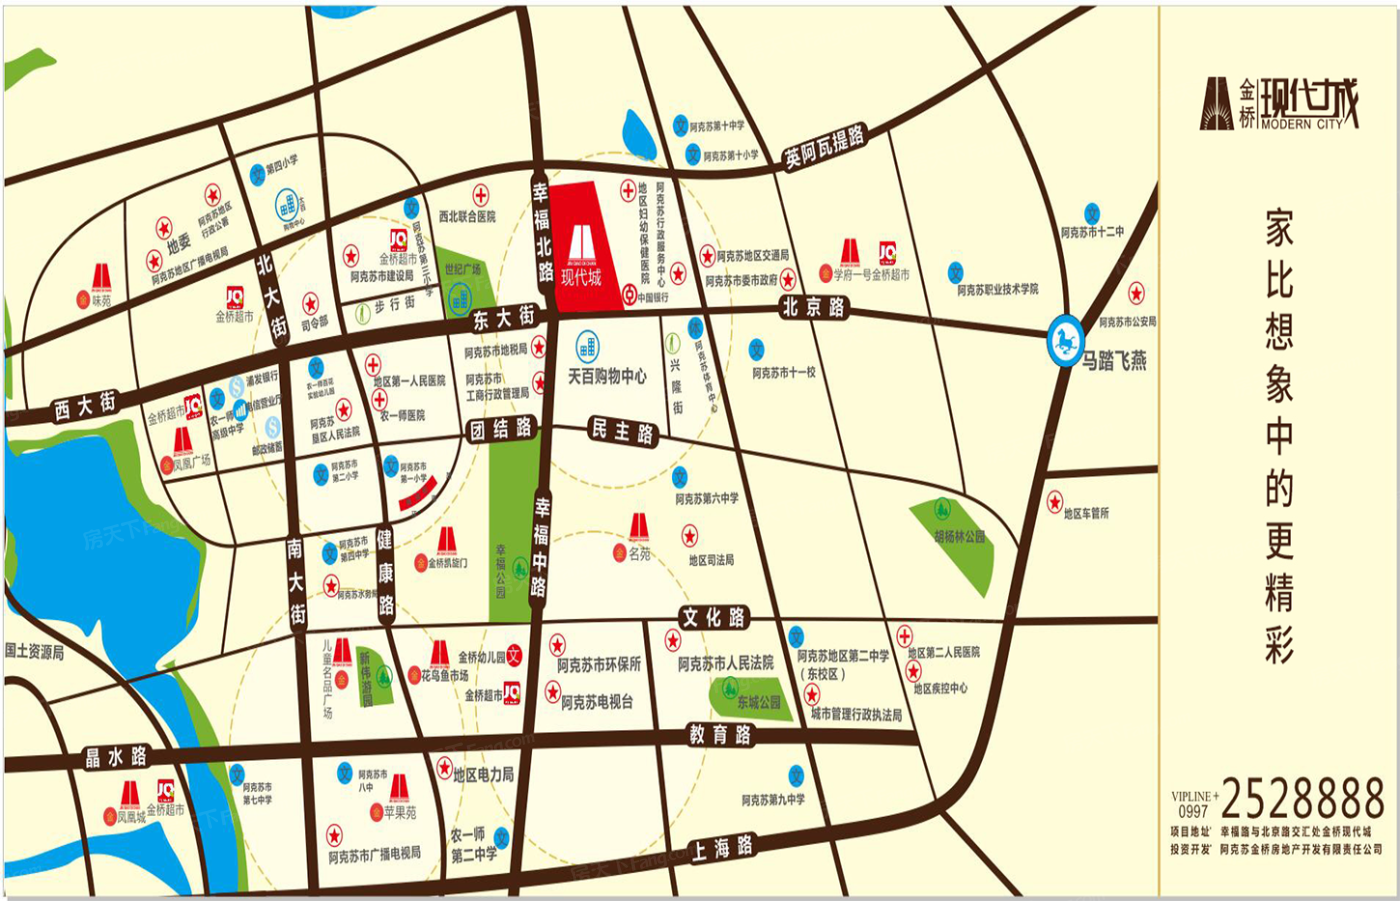 交通图:现代城区位图